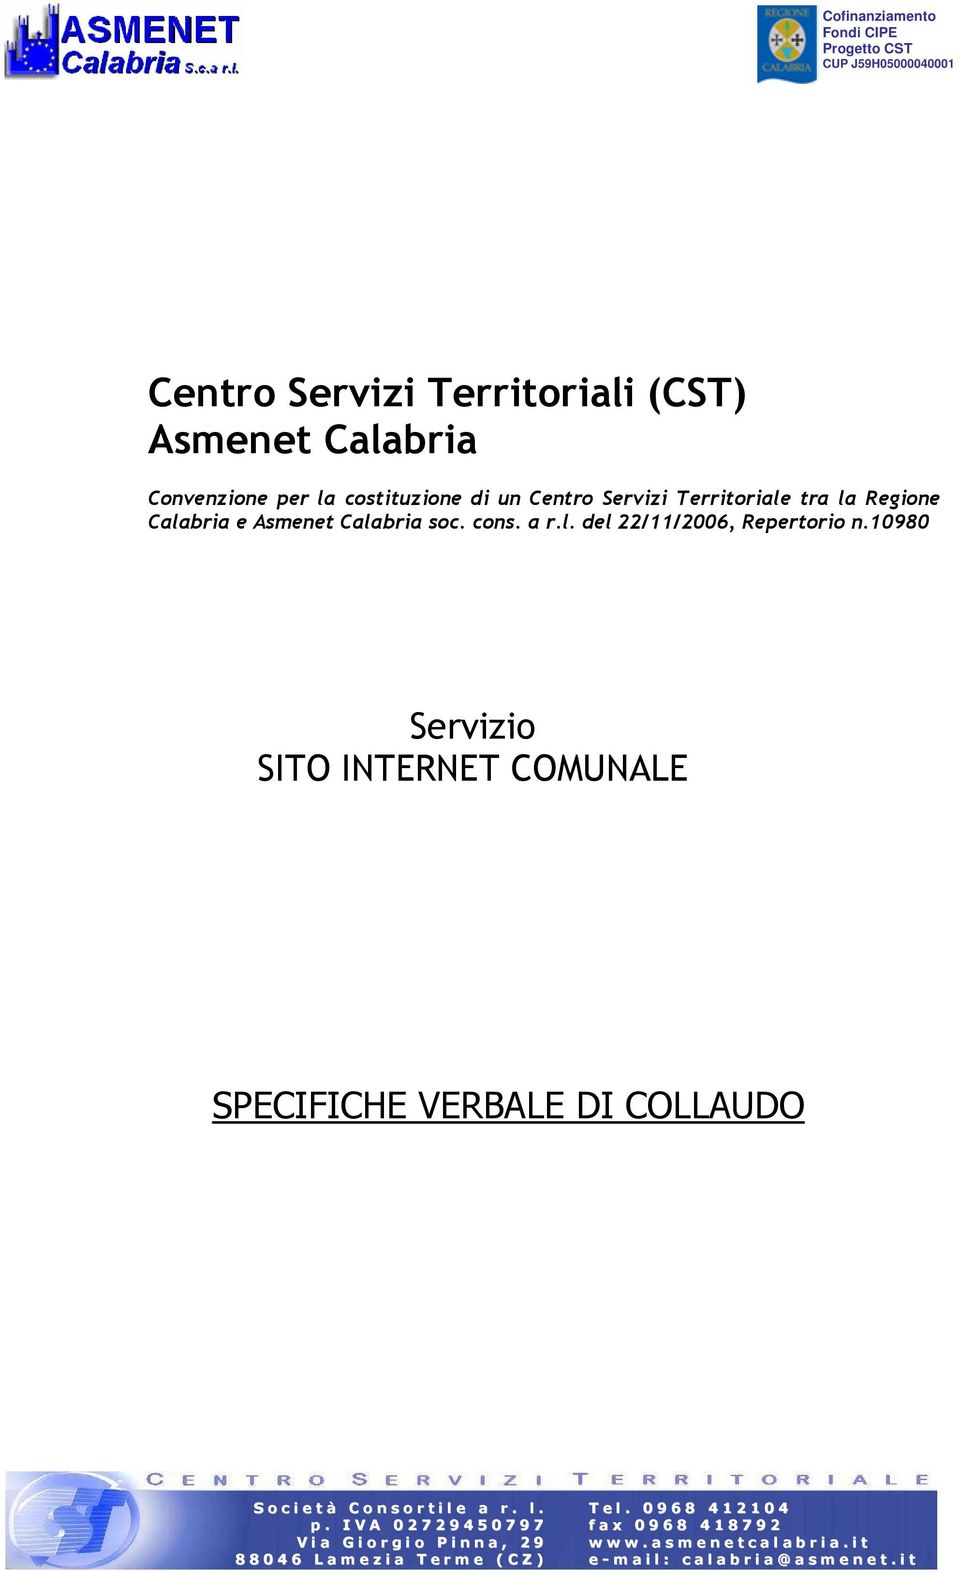 Centro Servizi Territoriale tra la Regione Calabria e Asmenet Calabria soc.